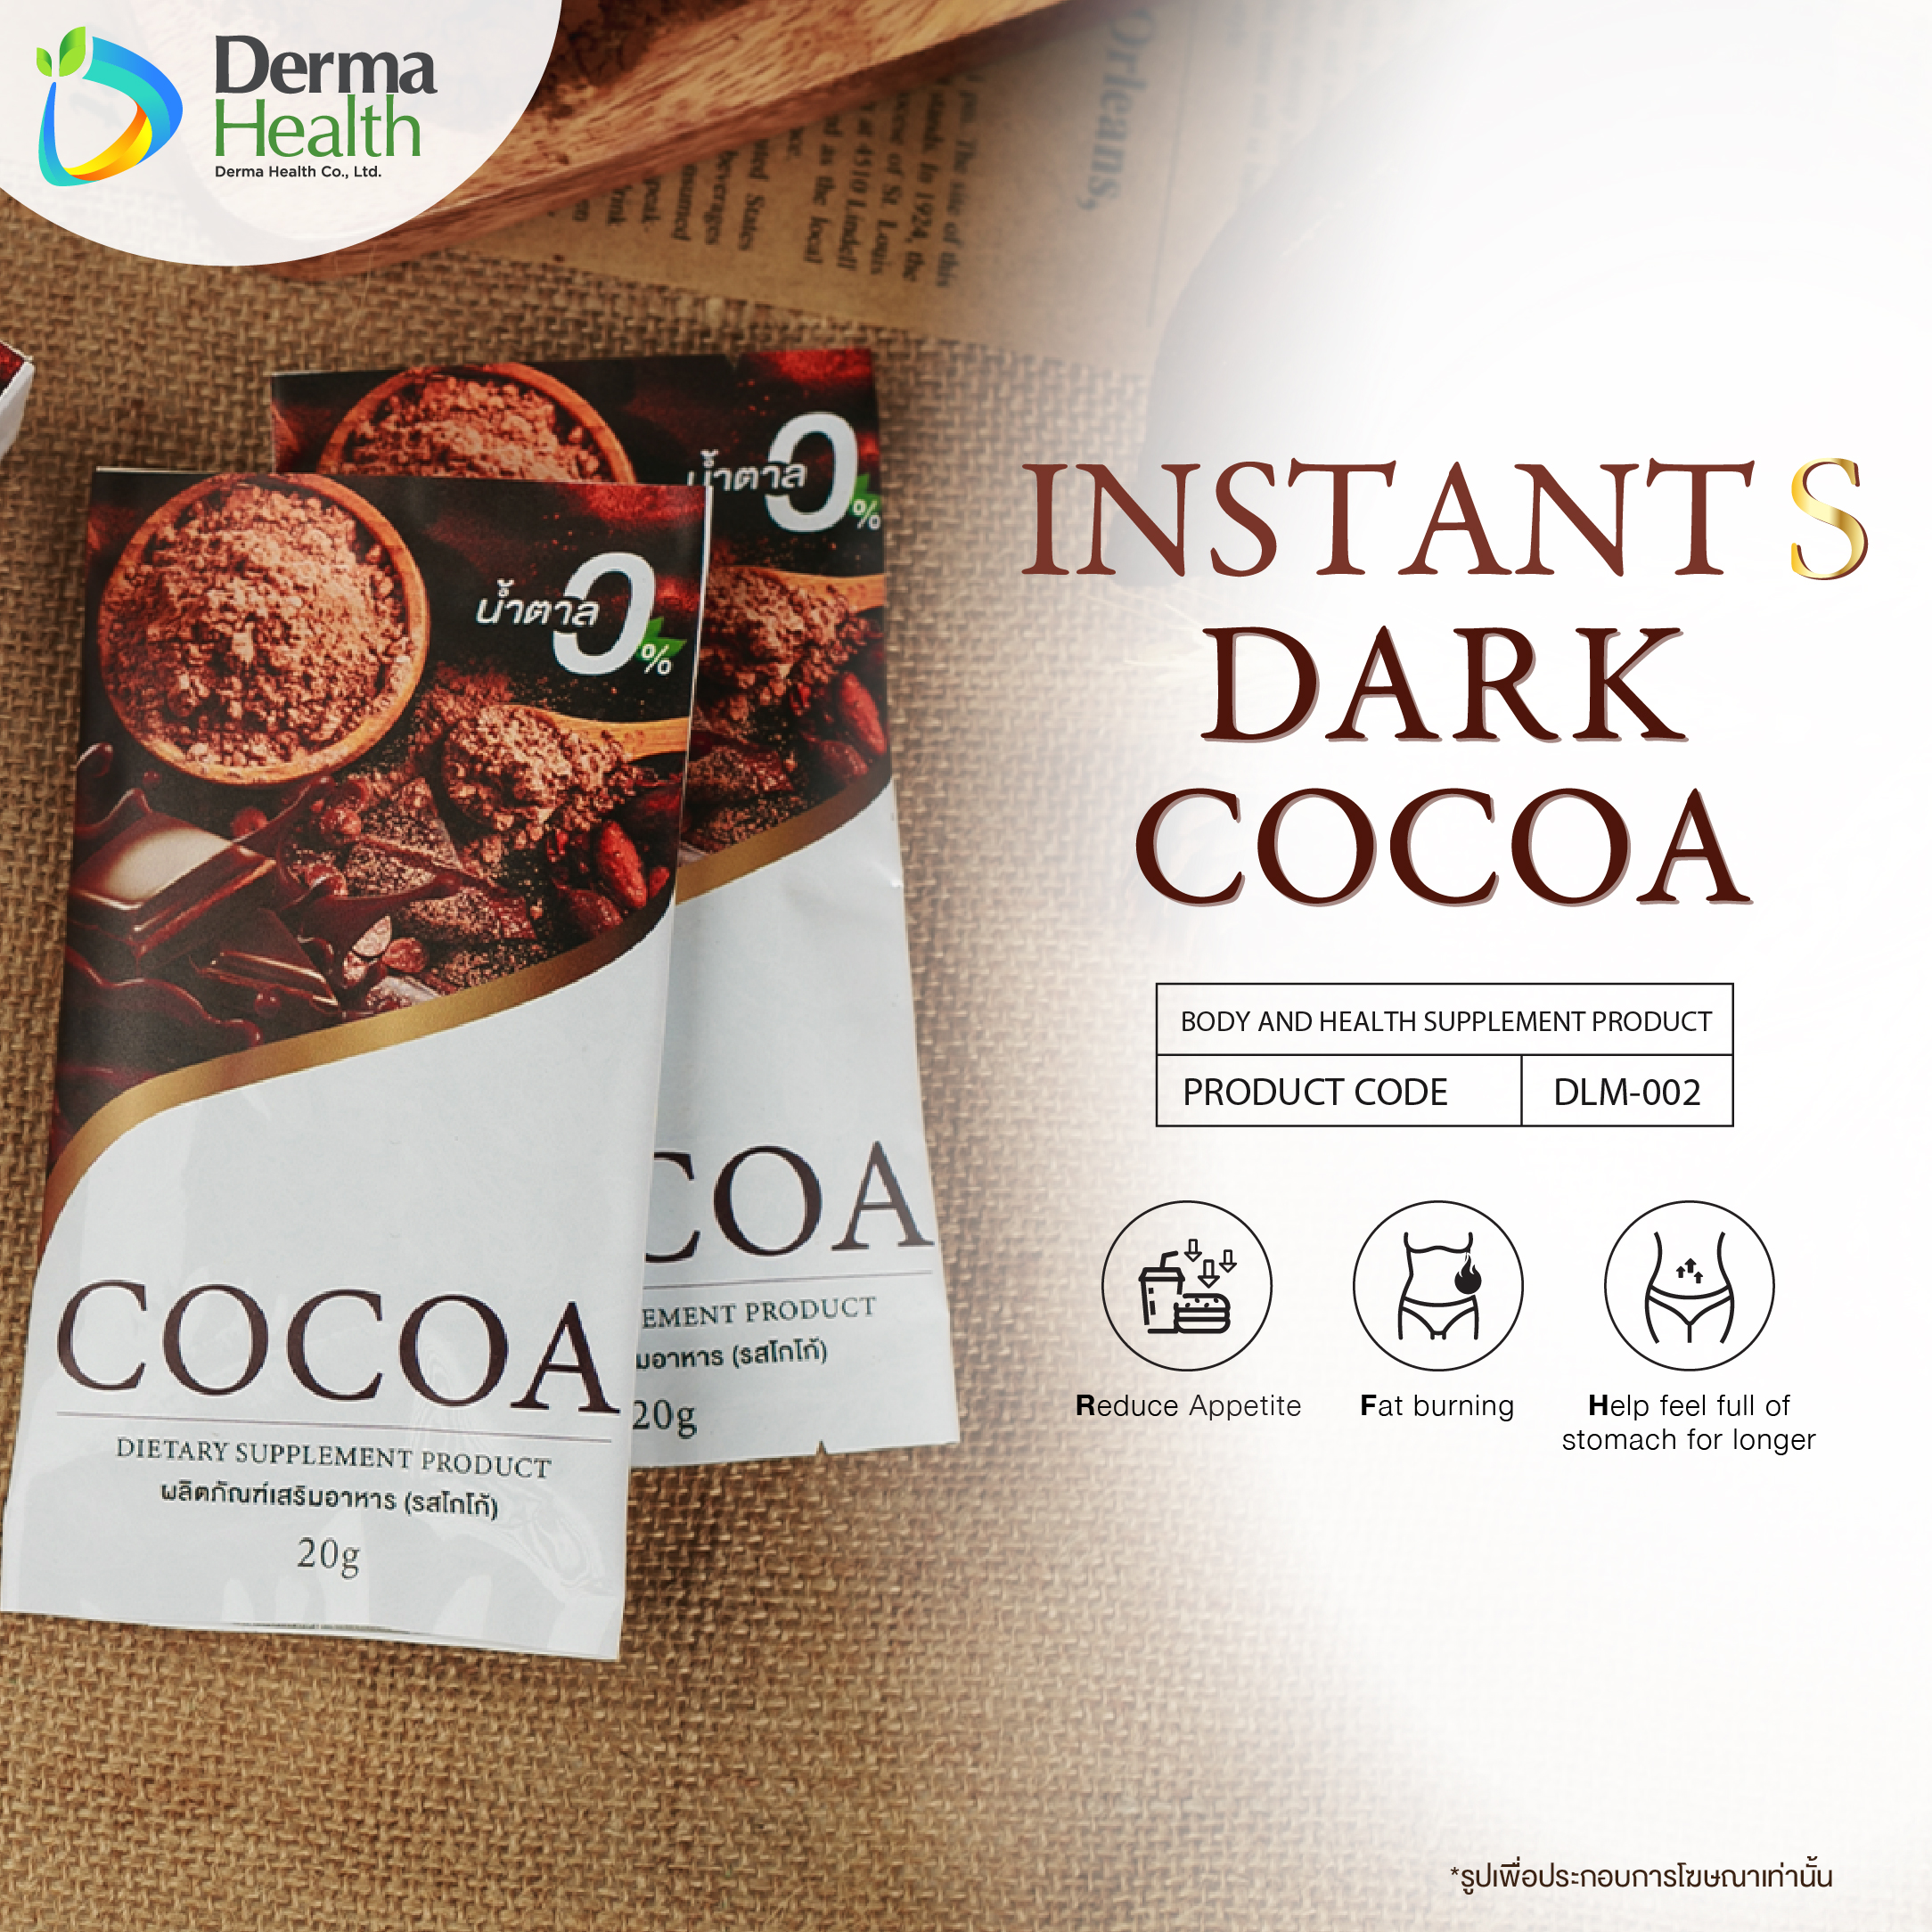 Instant S dark cocoa